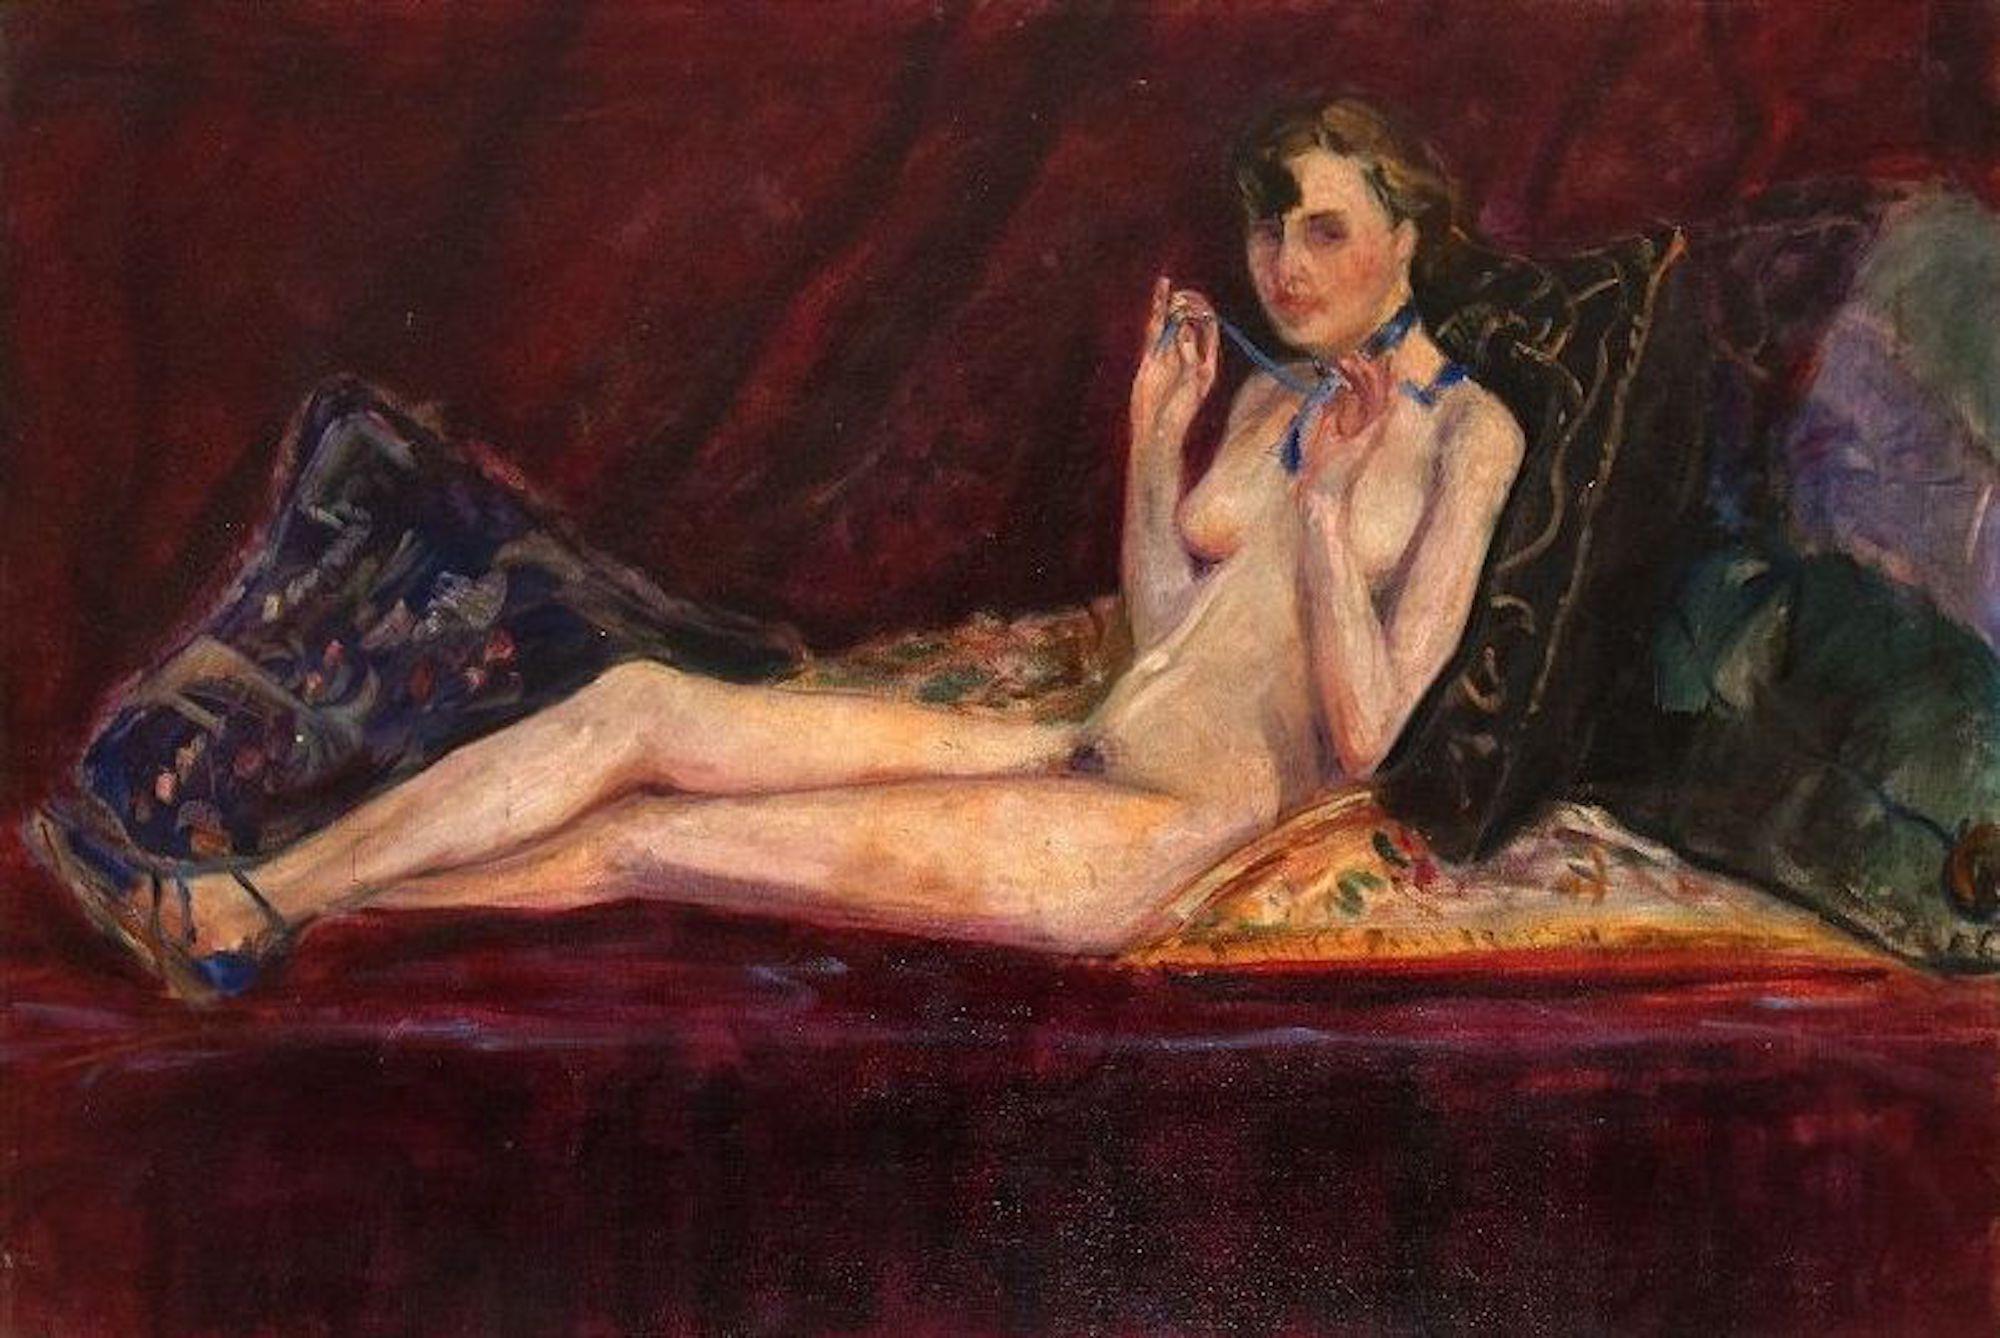 Laying Nude with Blue Lace ist ein Kunstwerk des italienischen Künstlers Antonio Feltrinelli aus den 1930er Jahren. 

Öl auf Leinwand. 

Schöner Originalrahmen enthalten (cm 140 x 190). 

Sowohl das Werk als auch der Rahmen sind in sehr gutem